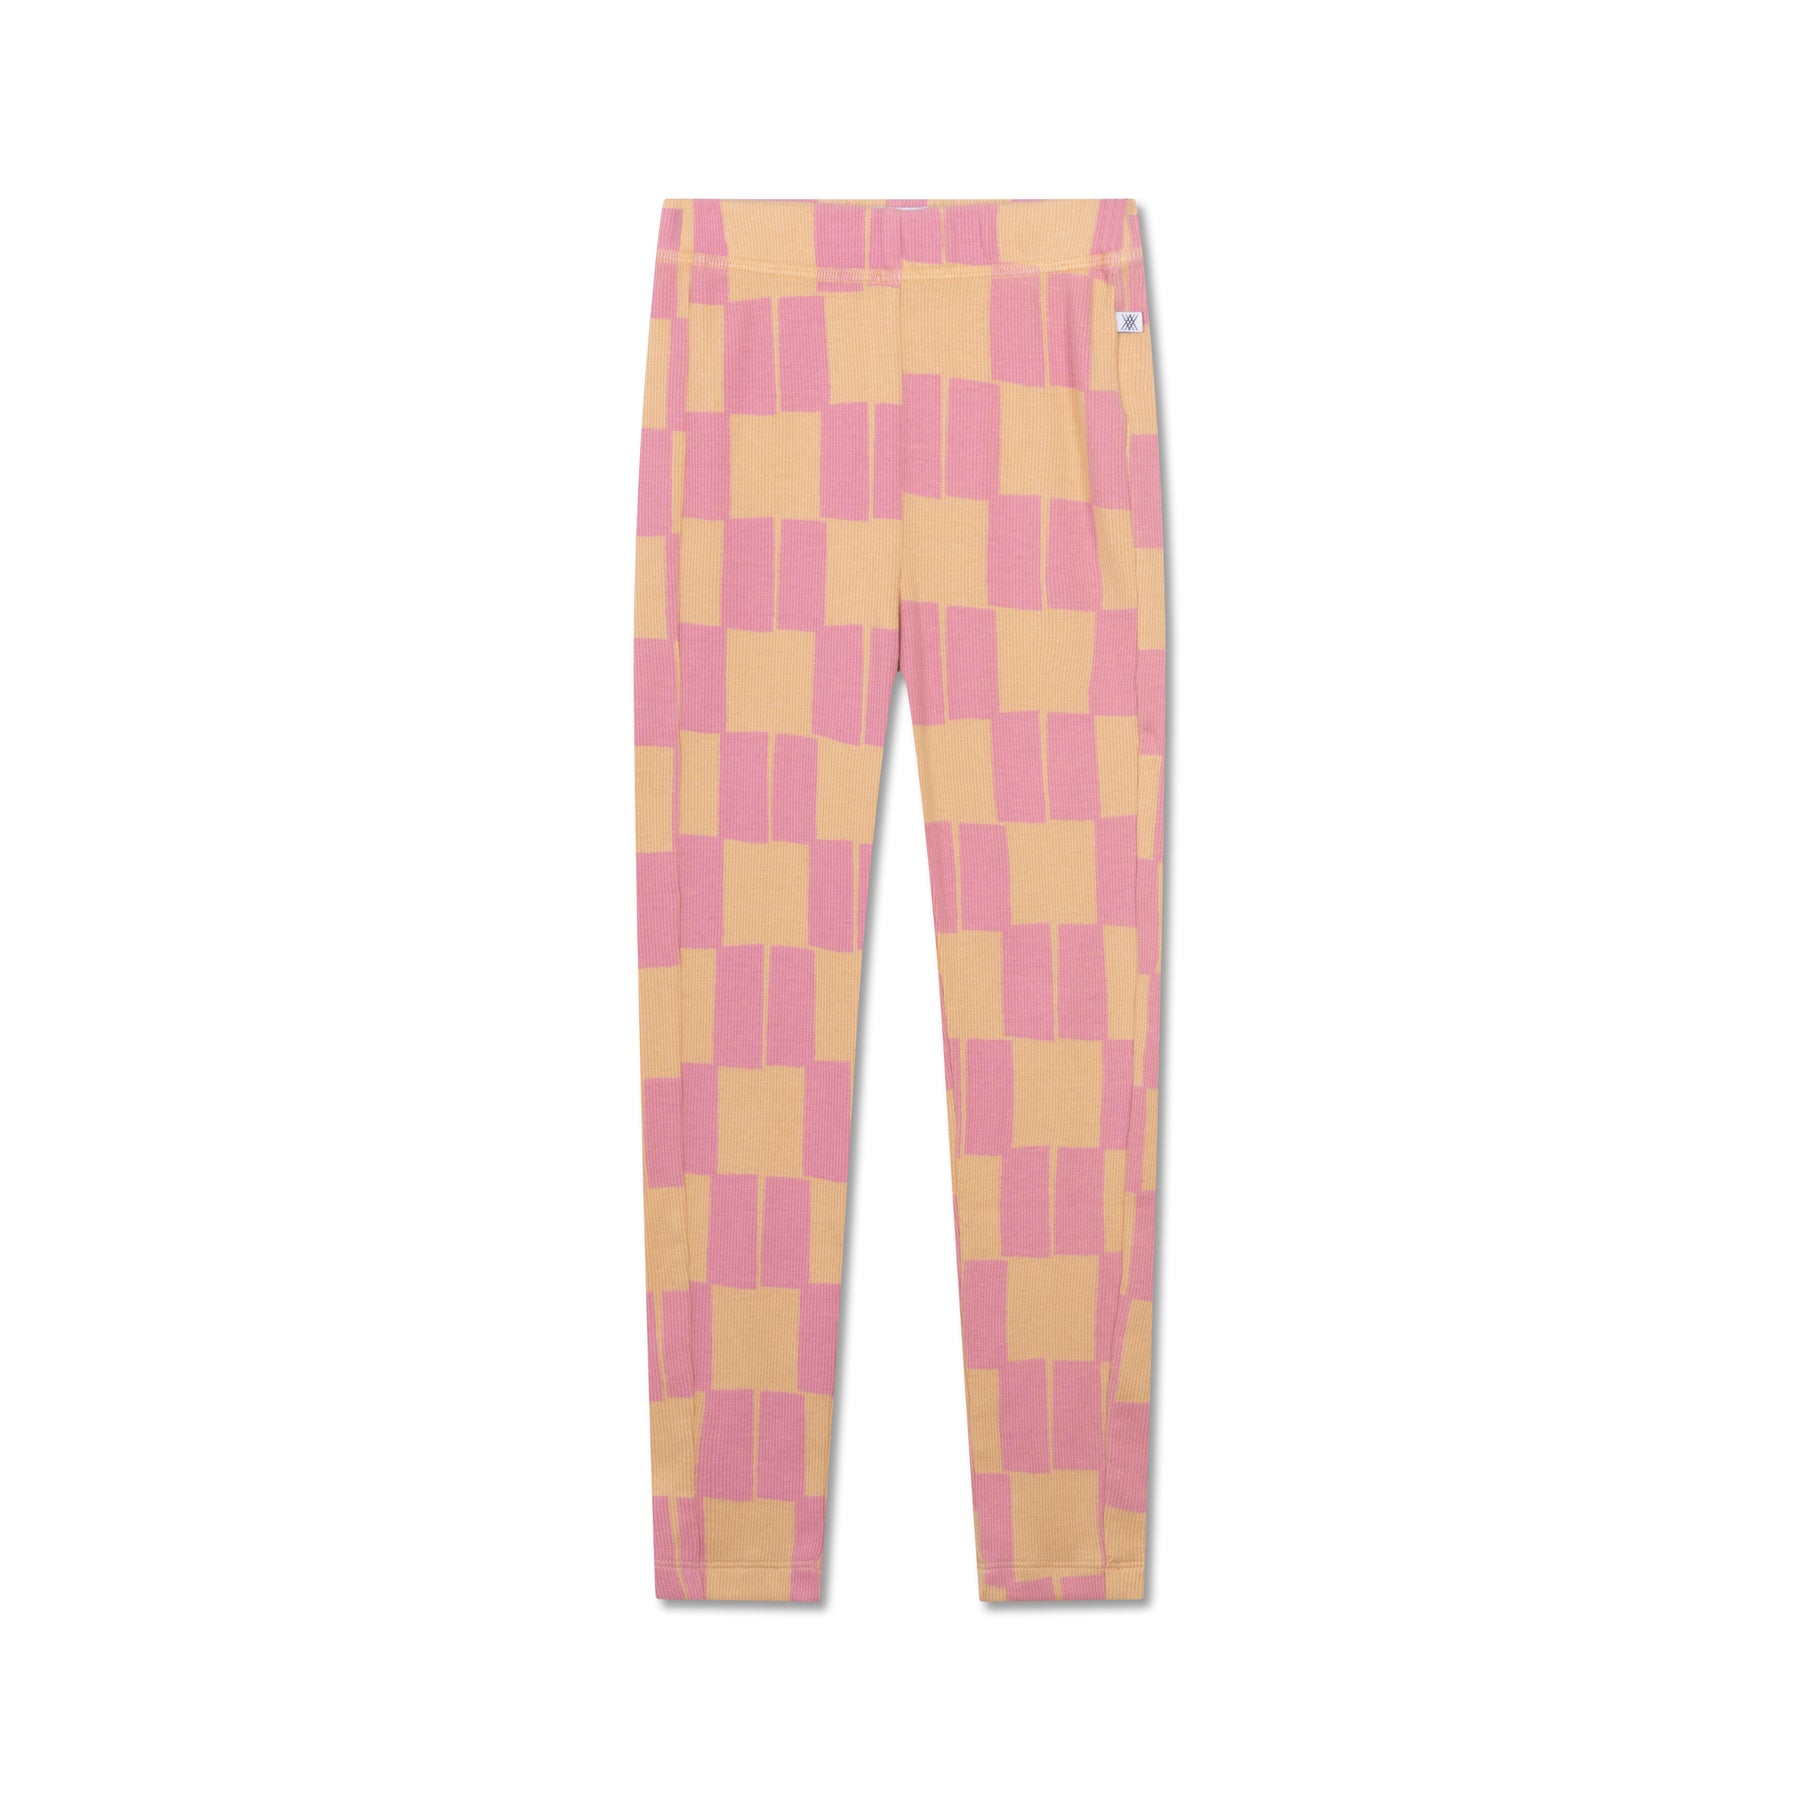 Legging pink tiles